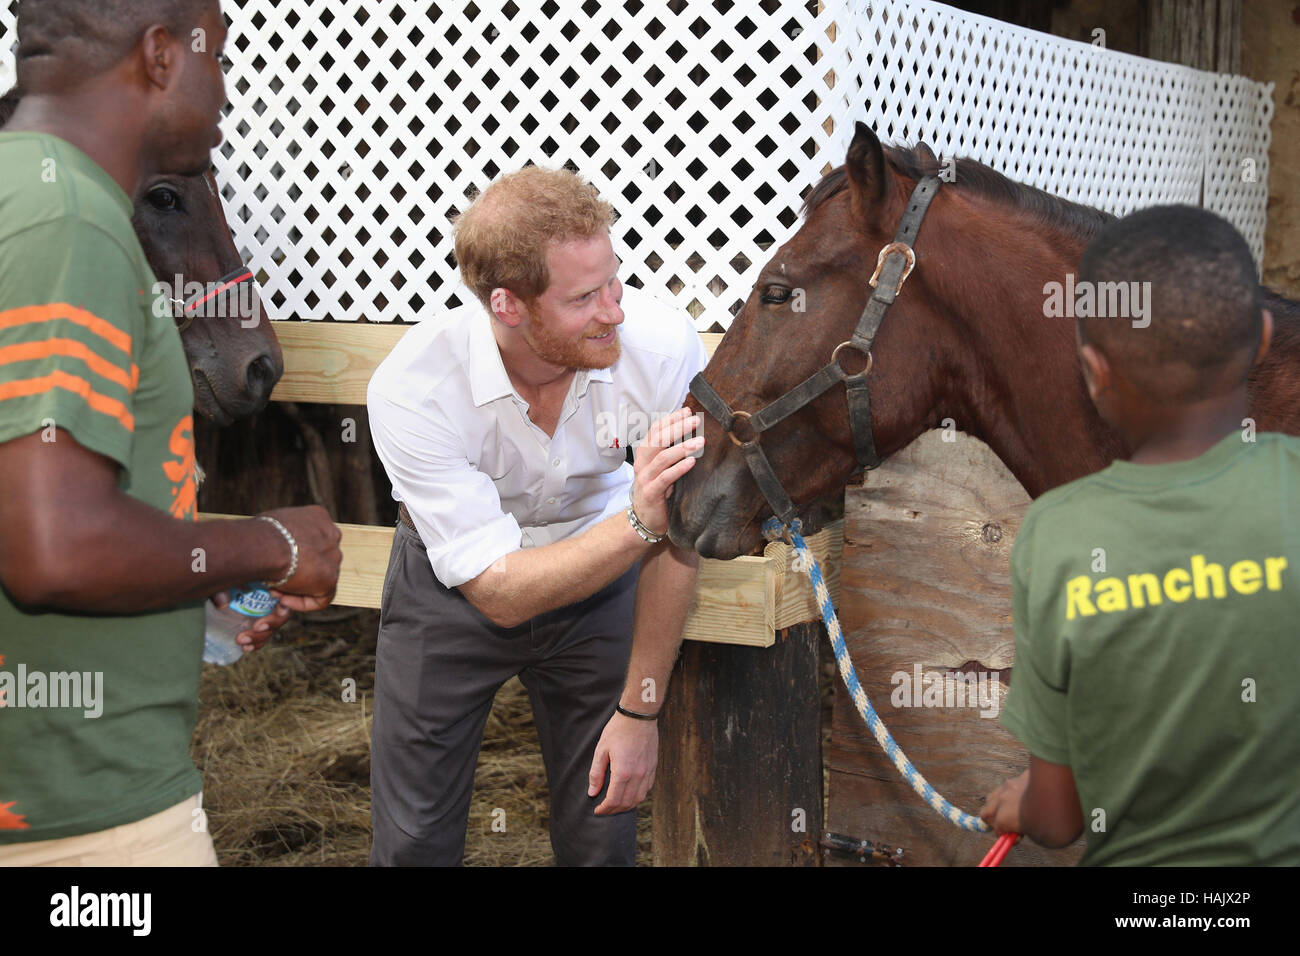 Prinz Harry Haustiere ein Pferd auf "Natur Spaß Ranch", ermöglicht es junge Menschen, frei miteinander zu sprechen, über wichtige Themen, einschließlich HIV/AIDS, mit einer positiven Fokus, ihr Leben in die richtige Richtung, während seiner Tour der Karibik zu führen. Stockfoto